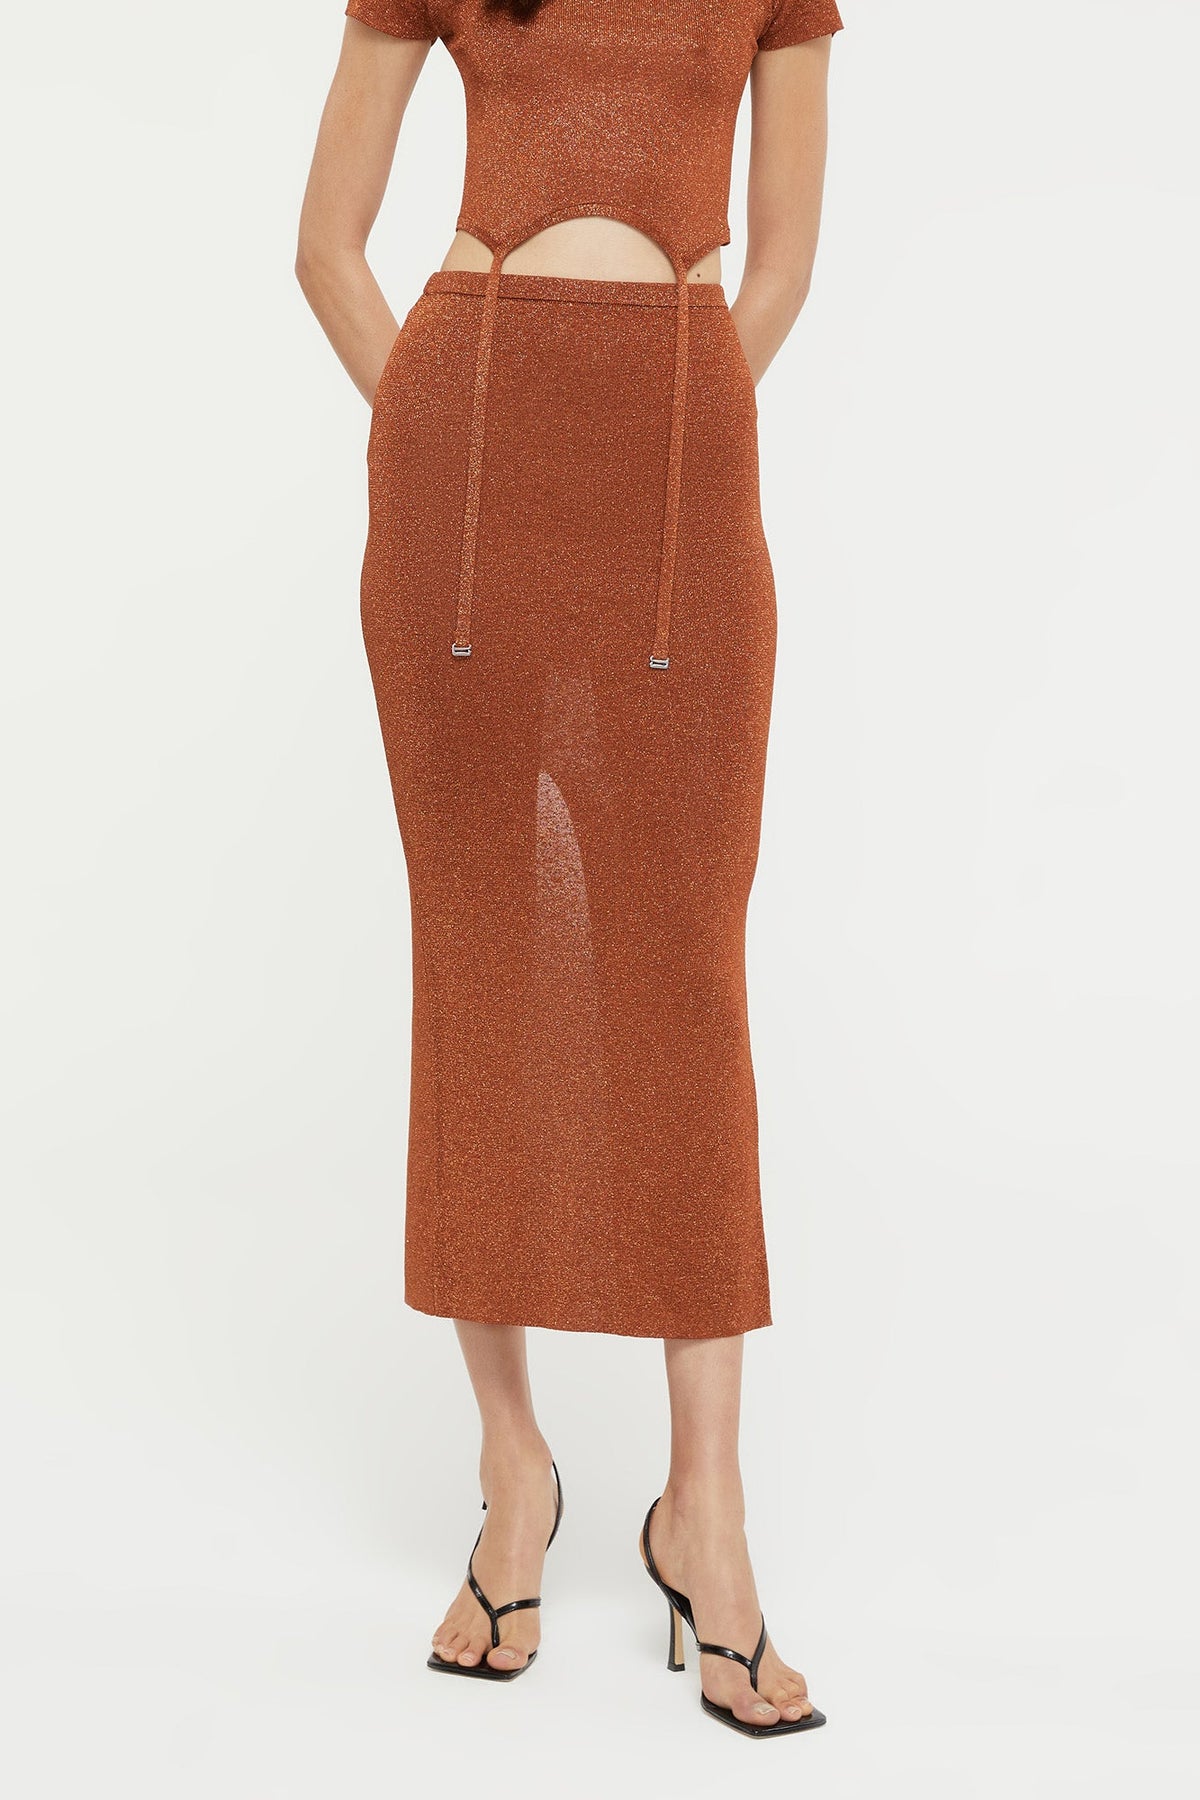 GINIA Yael Skirt in Bronze